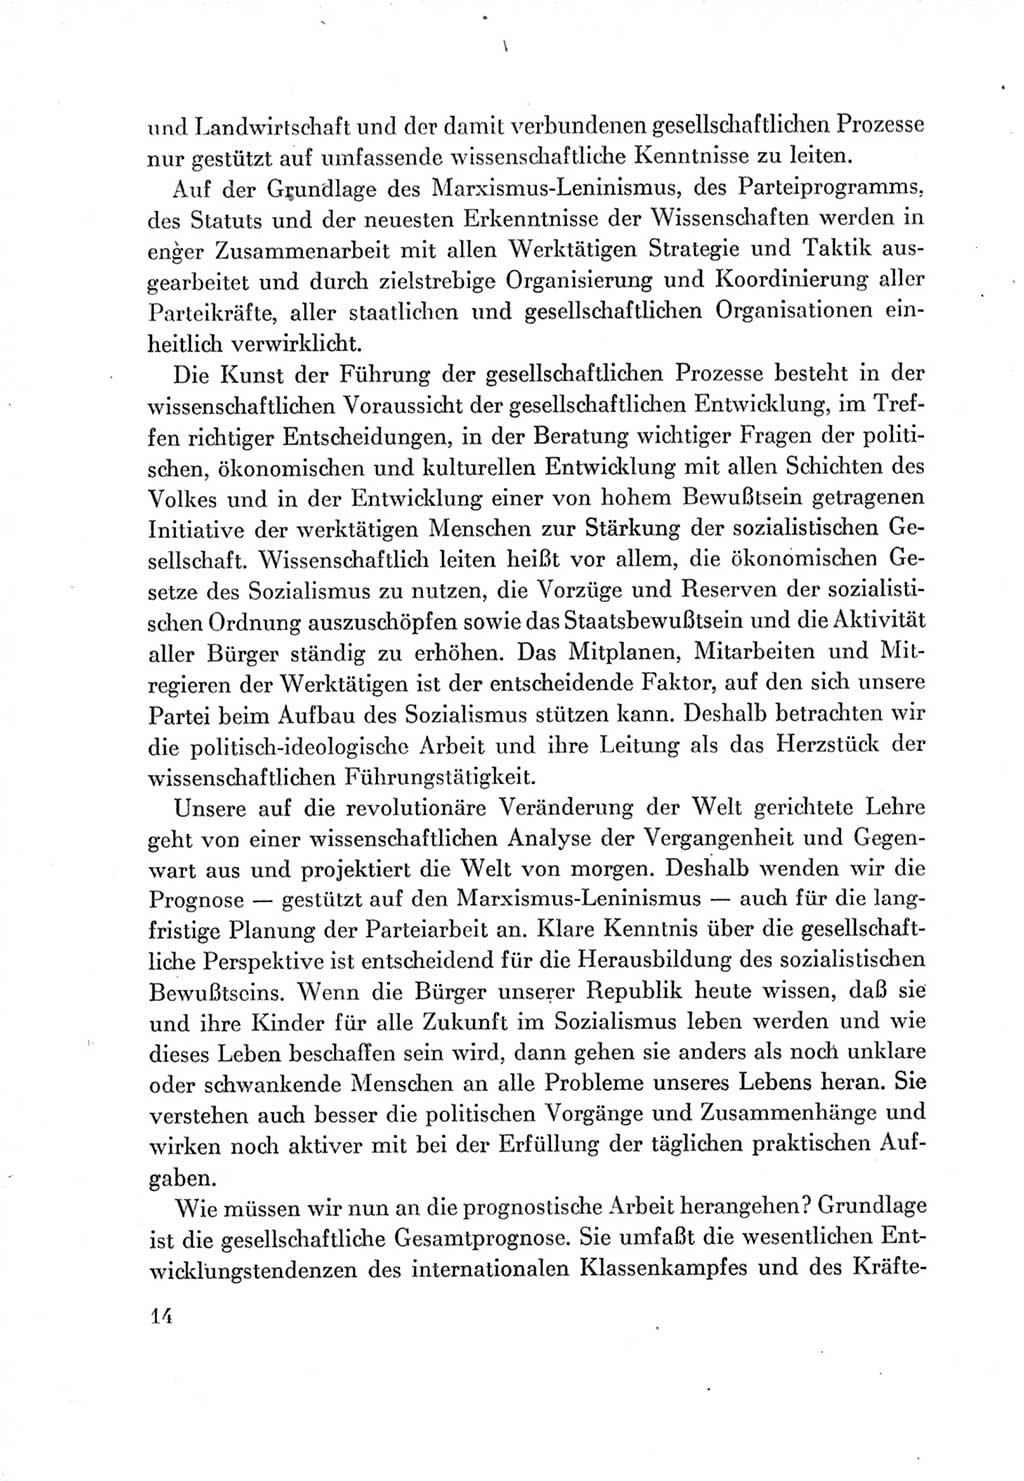 Protokoll der Verhandlungen des Ⅶ. Parteitages der Sozialistischen Einheitspartei Deutschlands (SED) [Deutsche Demokratische Republik (DDR)] 1967, Band Ⅱ, Seite 14 (Prot. Verh. Ⅶ. PT SED DDR 1967, Bd. Ⅱ, S. 14)